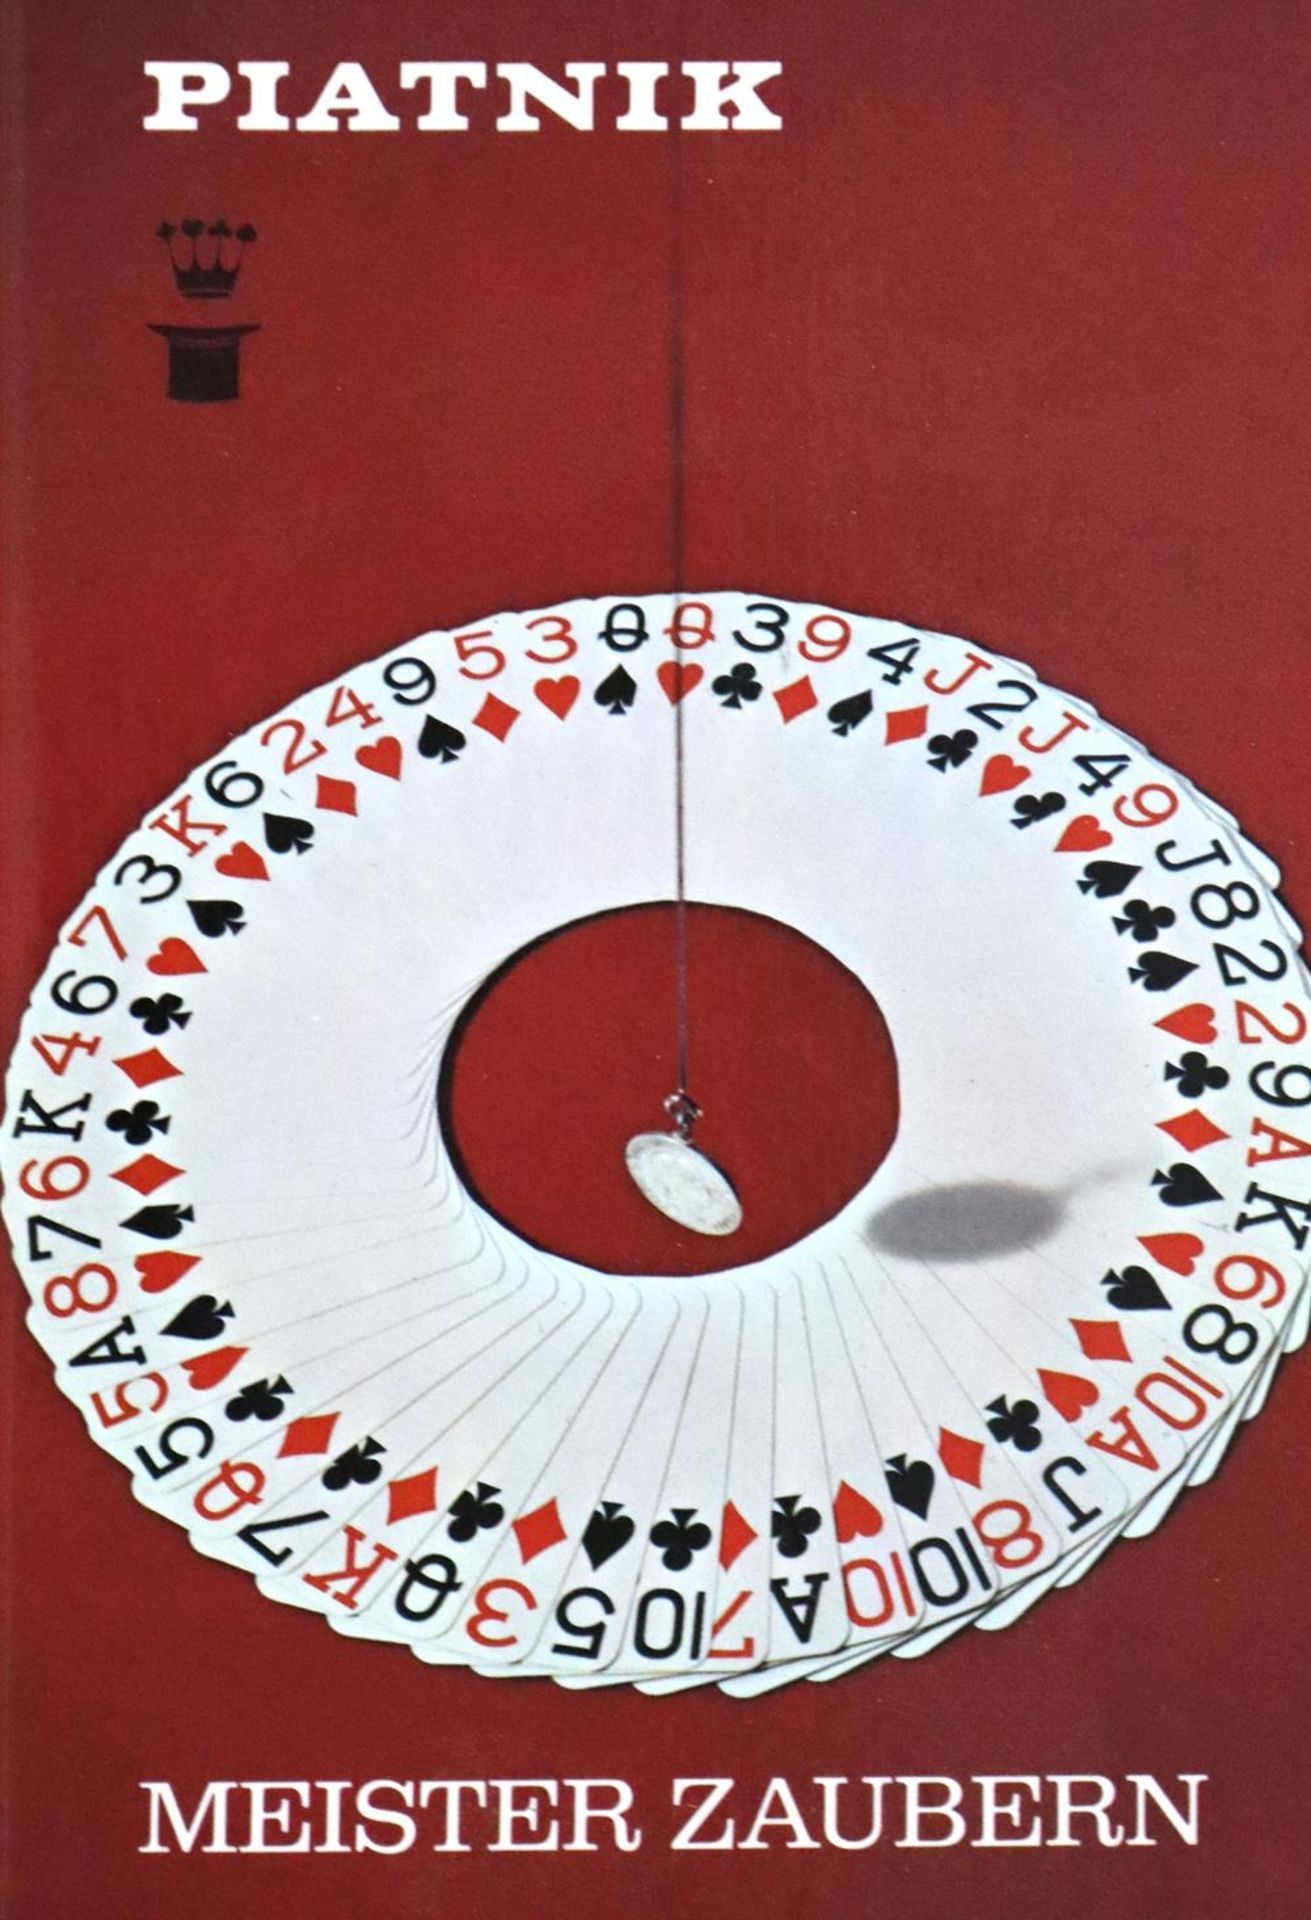 Kartenspiele.Sammlung von 62 mod. Kartenspielen u. 7 Schriften zum Thema, zus. 69 Tle. Darunter